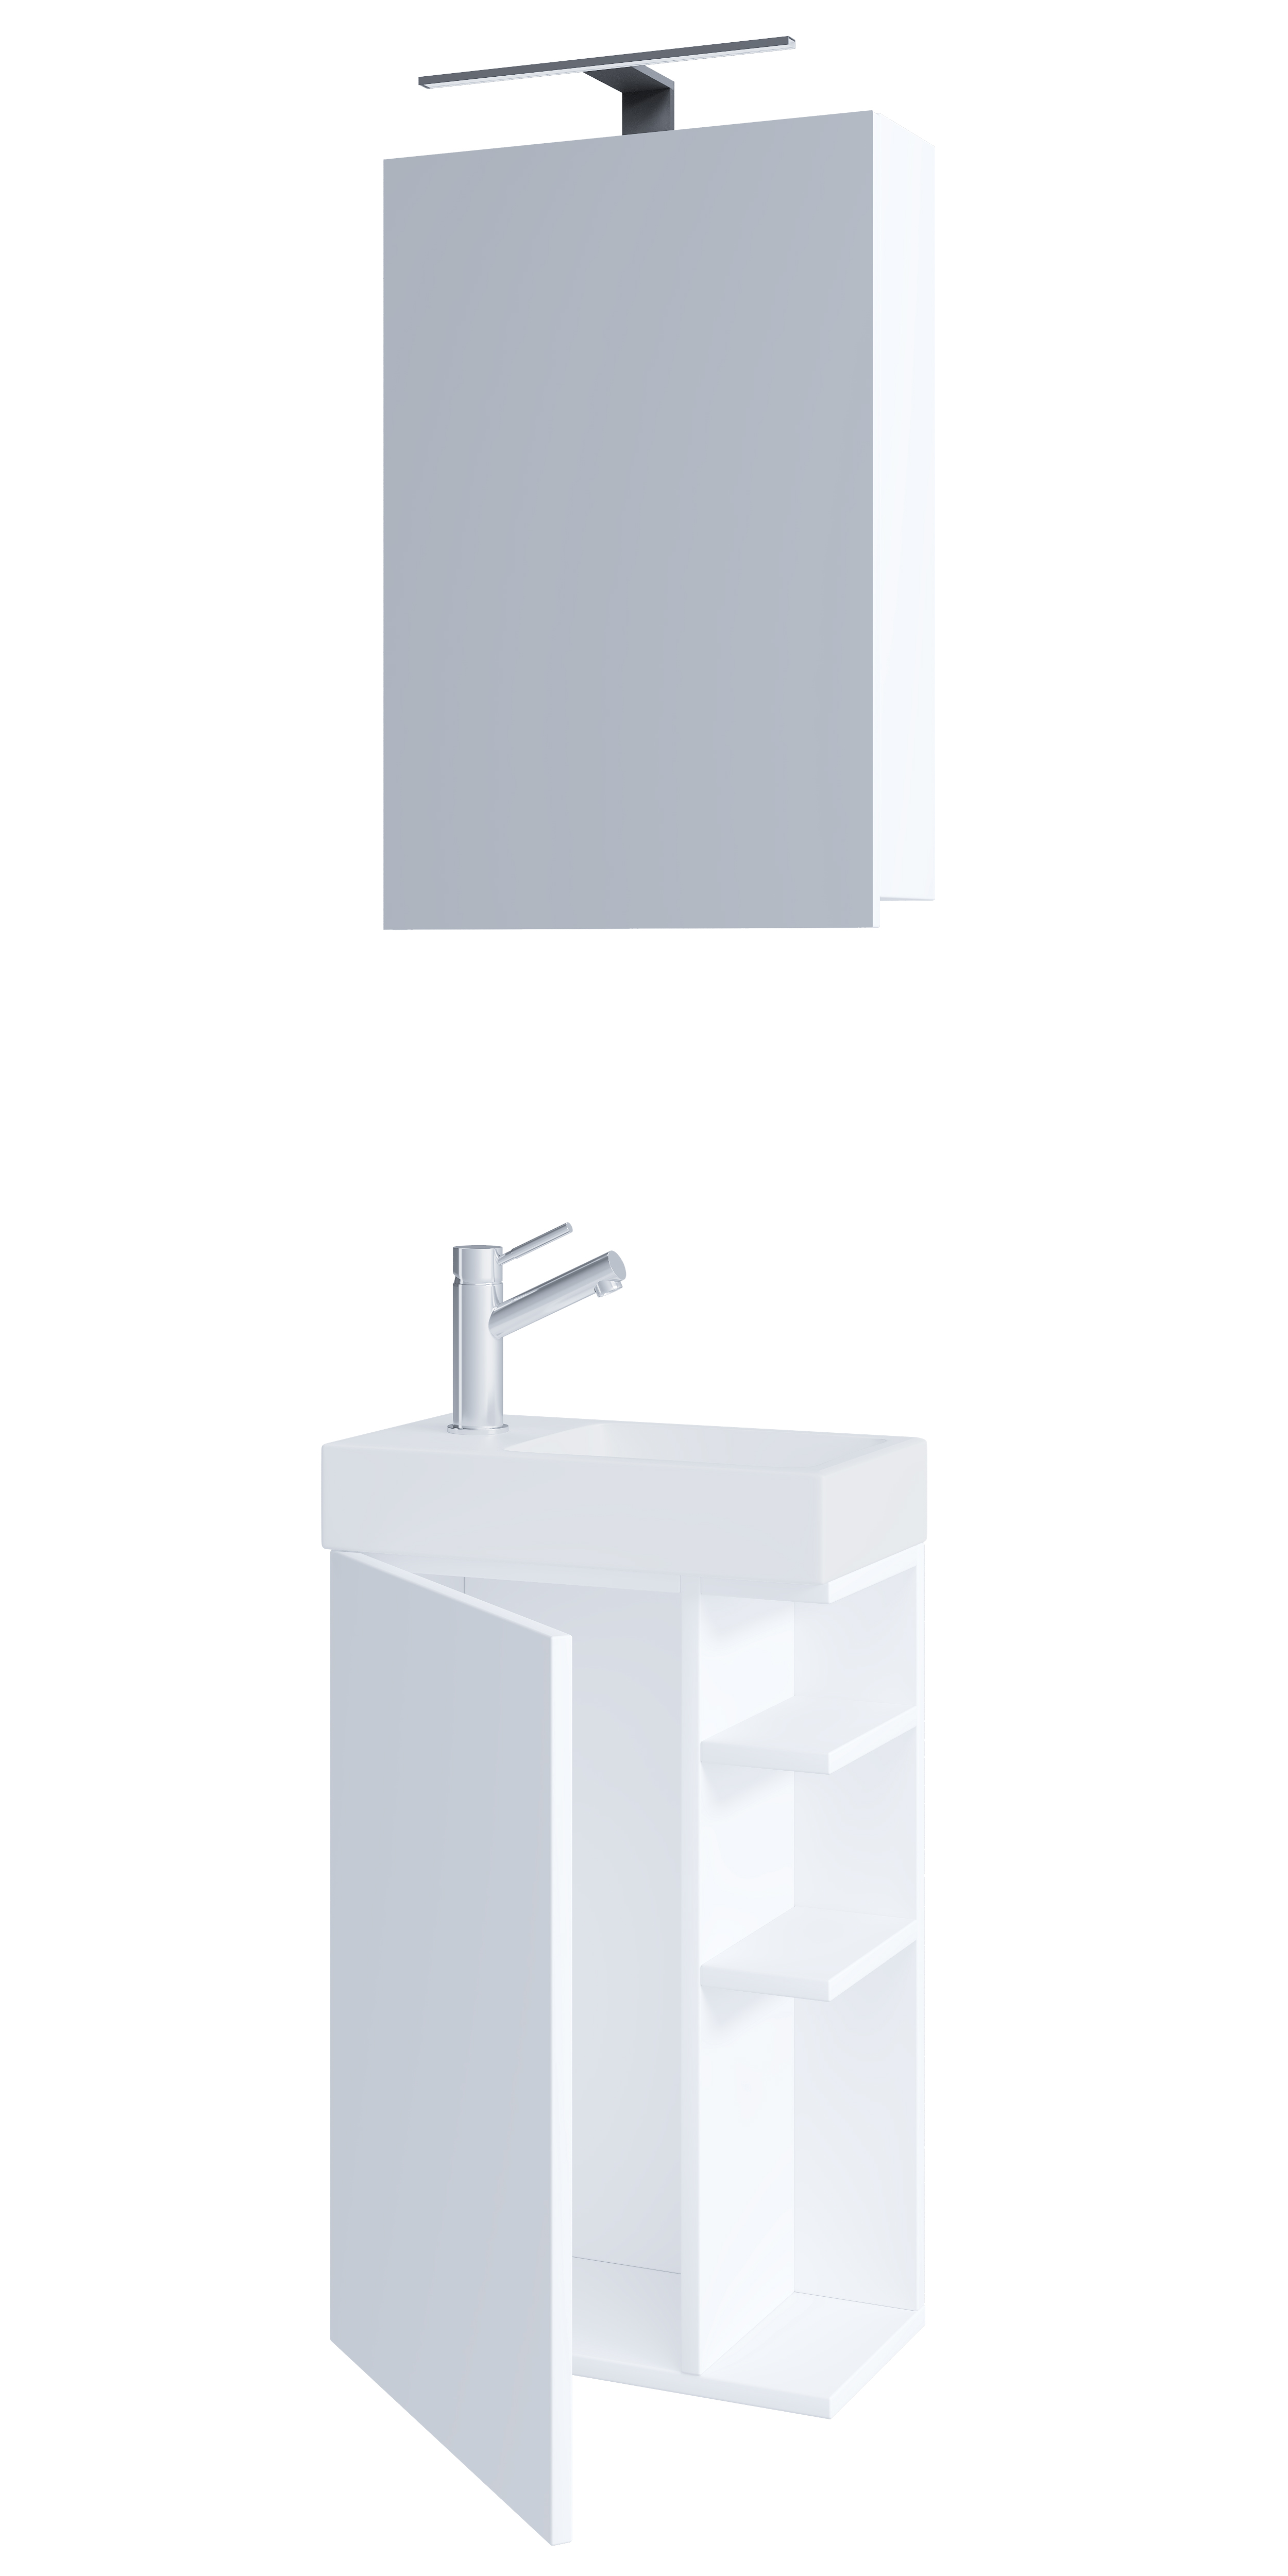 Billede af VCM NORDIC Lumia 3-delt gæstevaskeplads, m. spejlskab, håndvask, 1 låge, 2 hylder - hvid træ